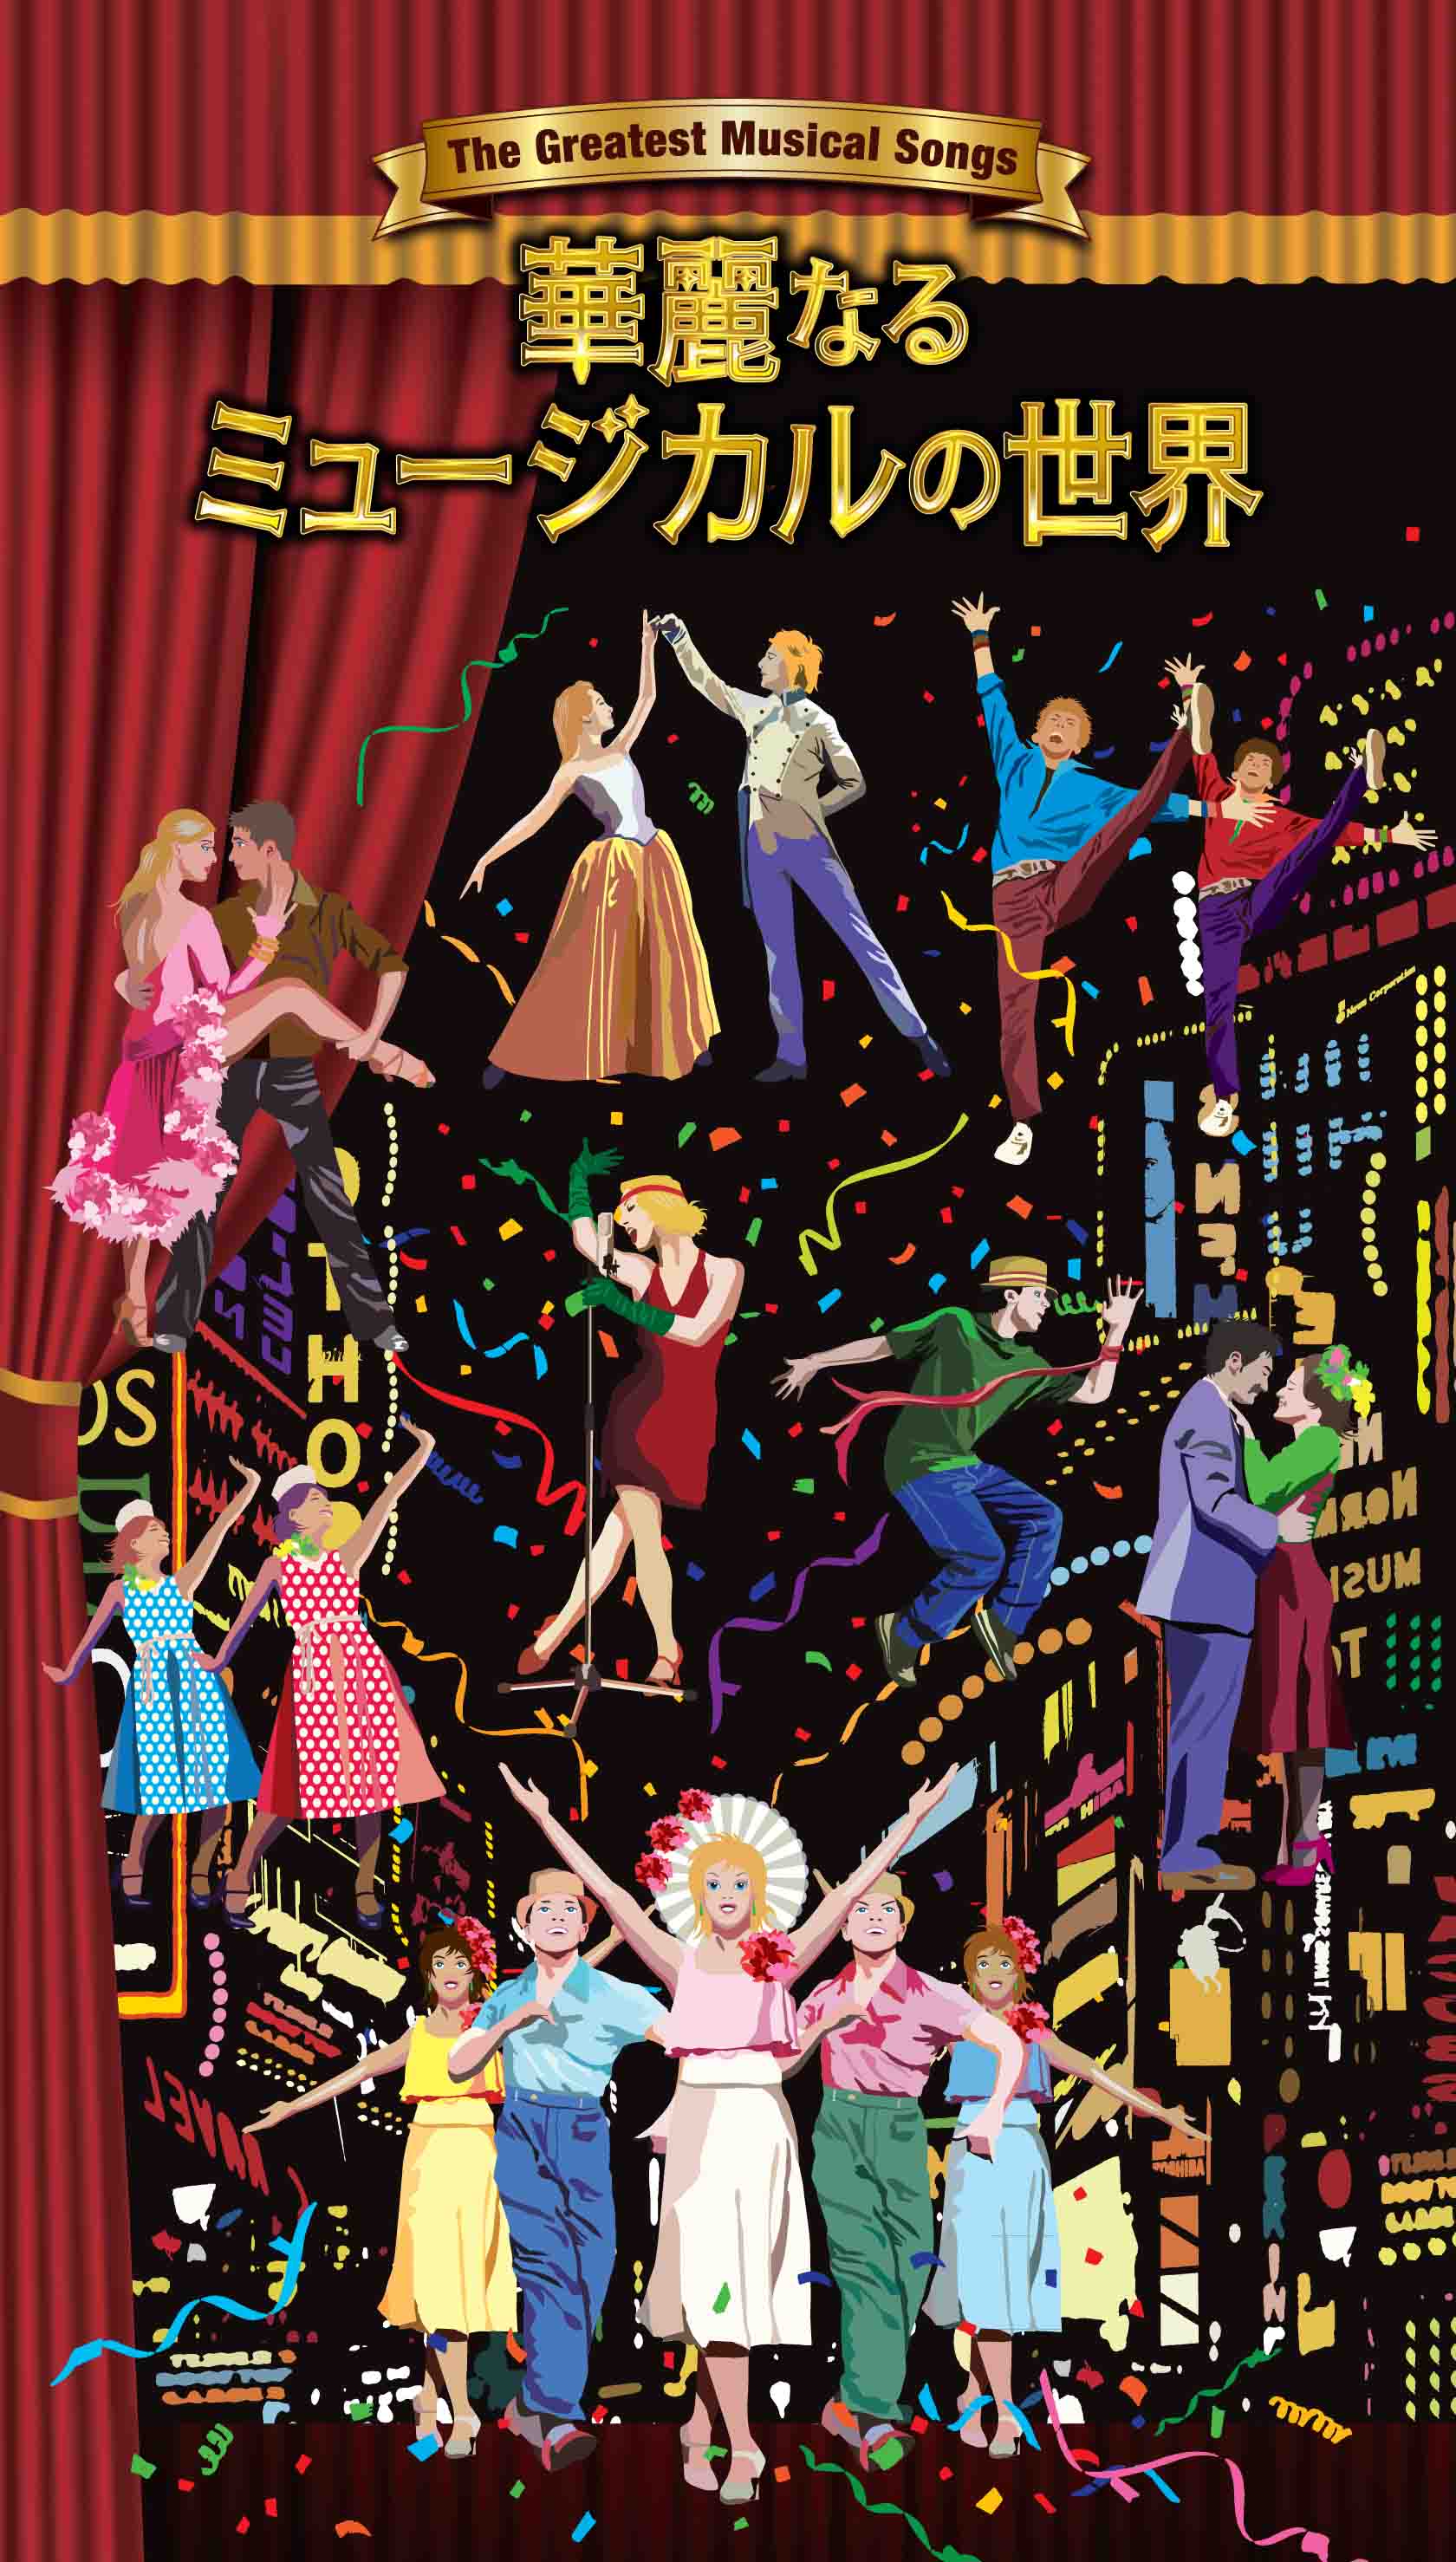 日本初 名作ミュージカルを彩った名曲を集大成したcd5枚組ボックスセット 華麗なるミュージカルの世界 5月23日発売 株式会社ソニー ミュージックレーベルズ レガシープラスのプレスリリース